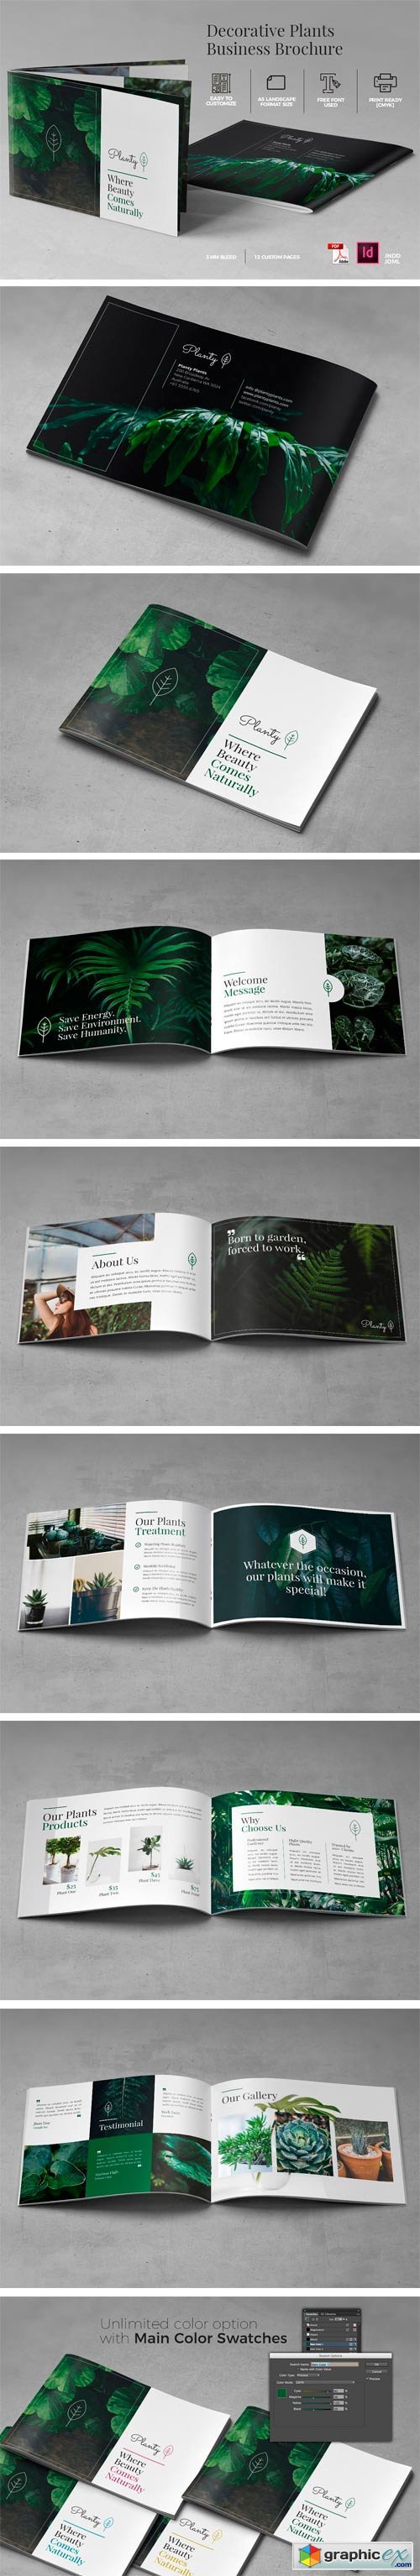 A5 Decorative Plants Brochure